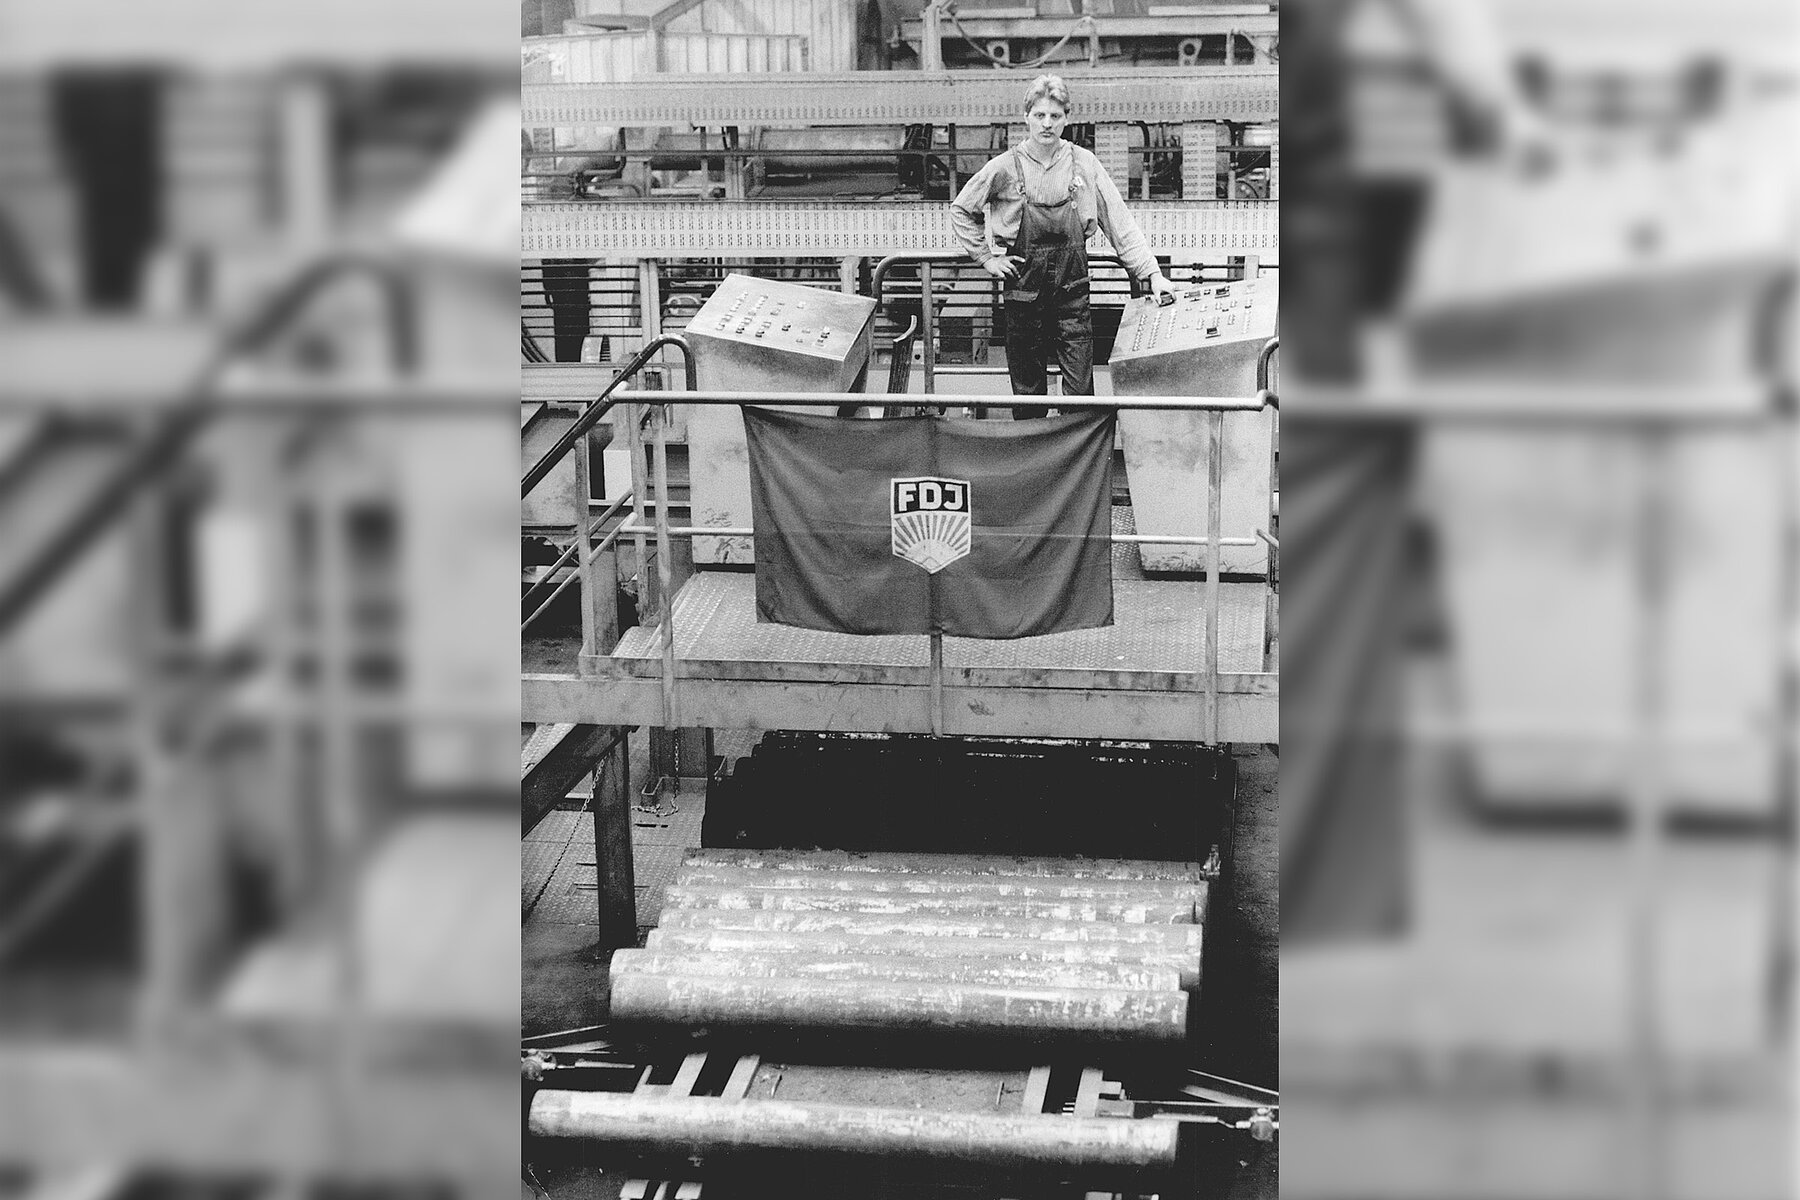 Arbeiter auf einem erhöhtem Metallbalkon. Am Geländer vor ihm hängt eine Fahne mit dem Logo der Freien Deutschen Jugend. Davor und darunter befinden sich mehrere Metallrohre in einer Reihe.